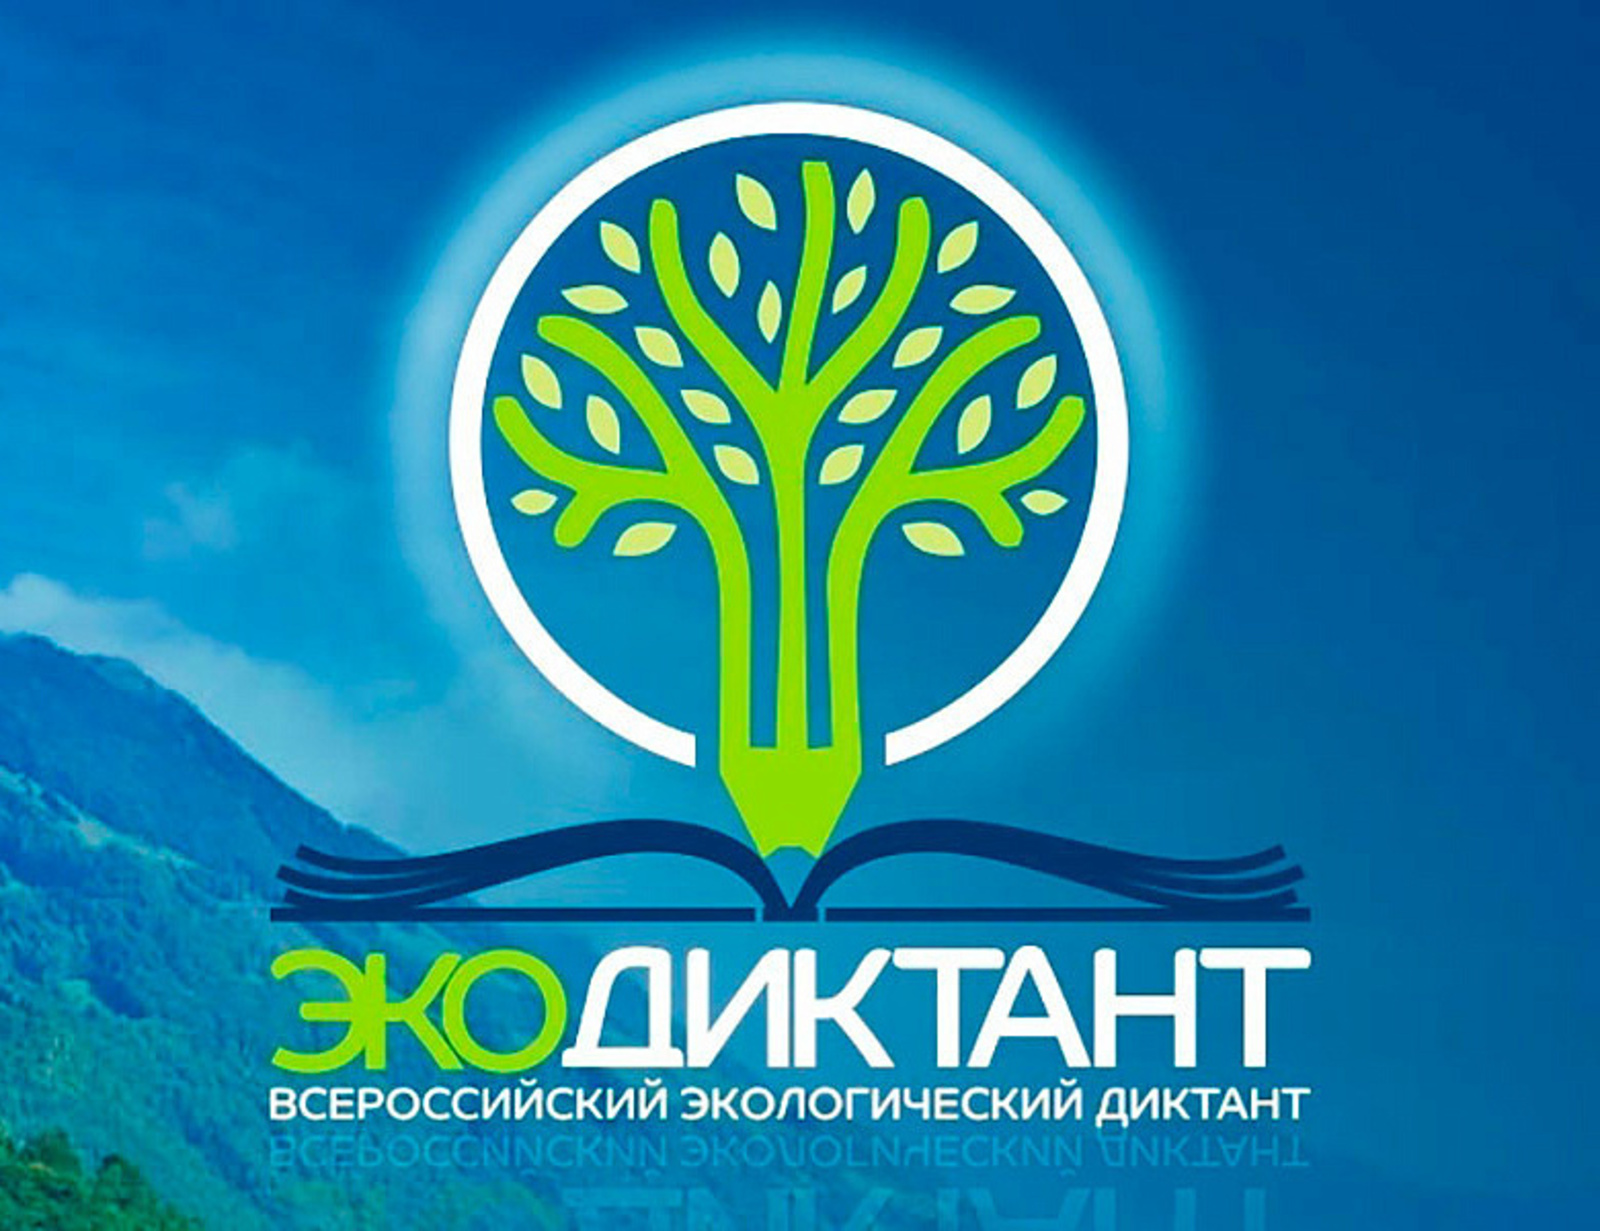 Башкортостан в числе лидеров по итогам Всероссийского экологического диктанта